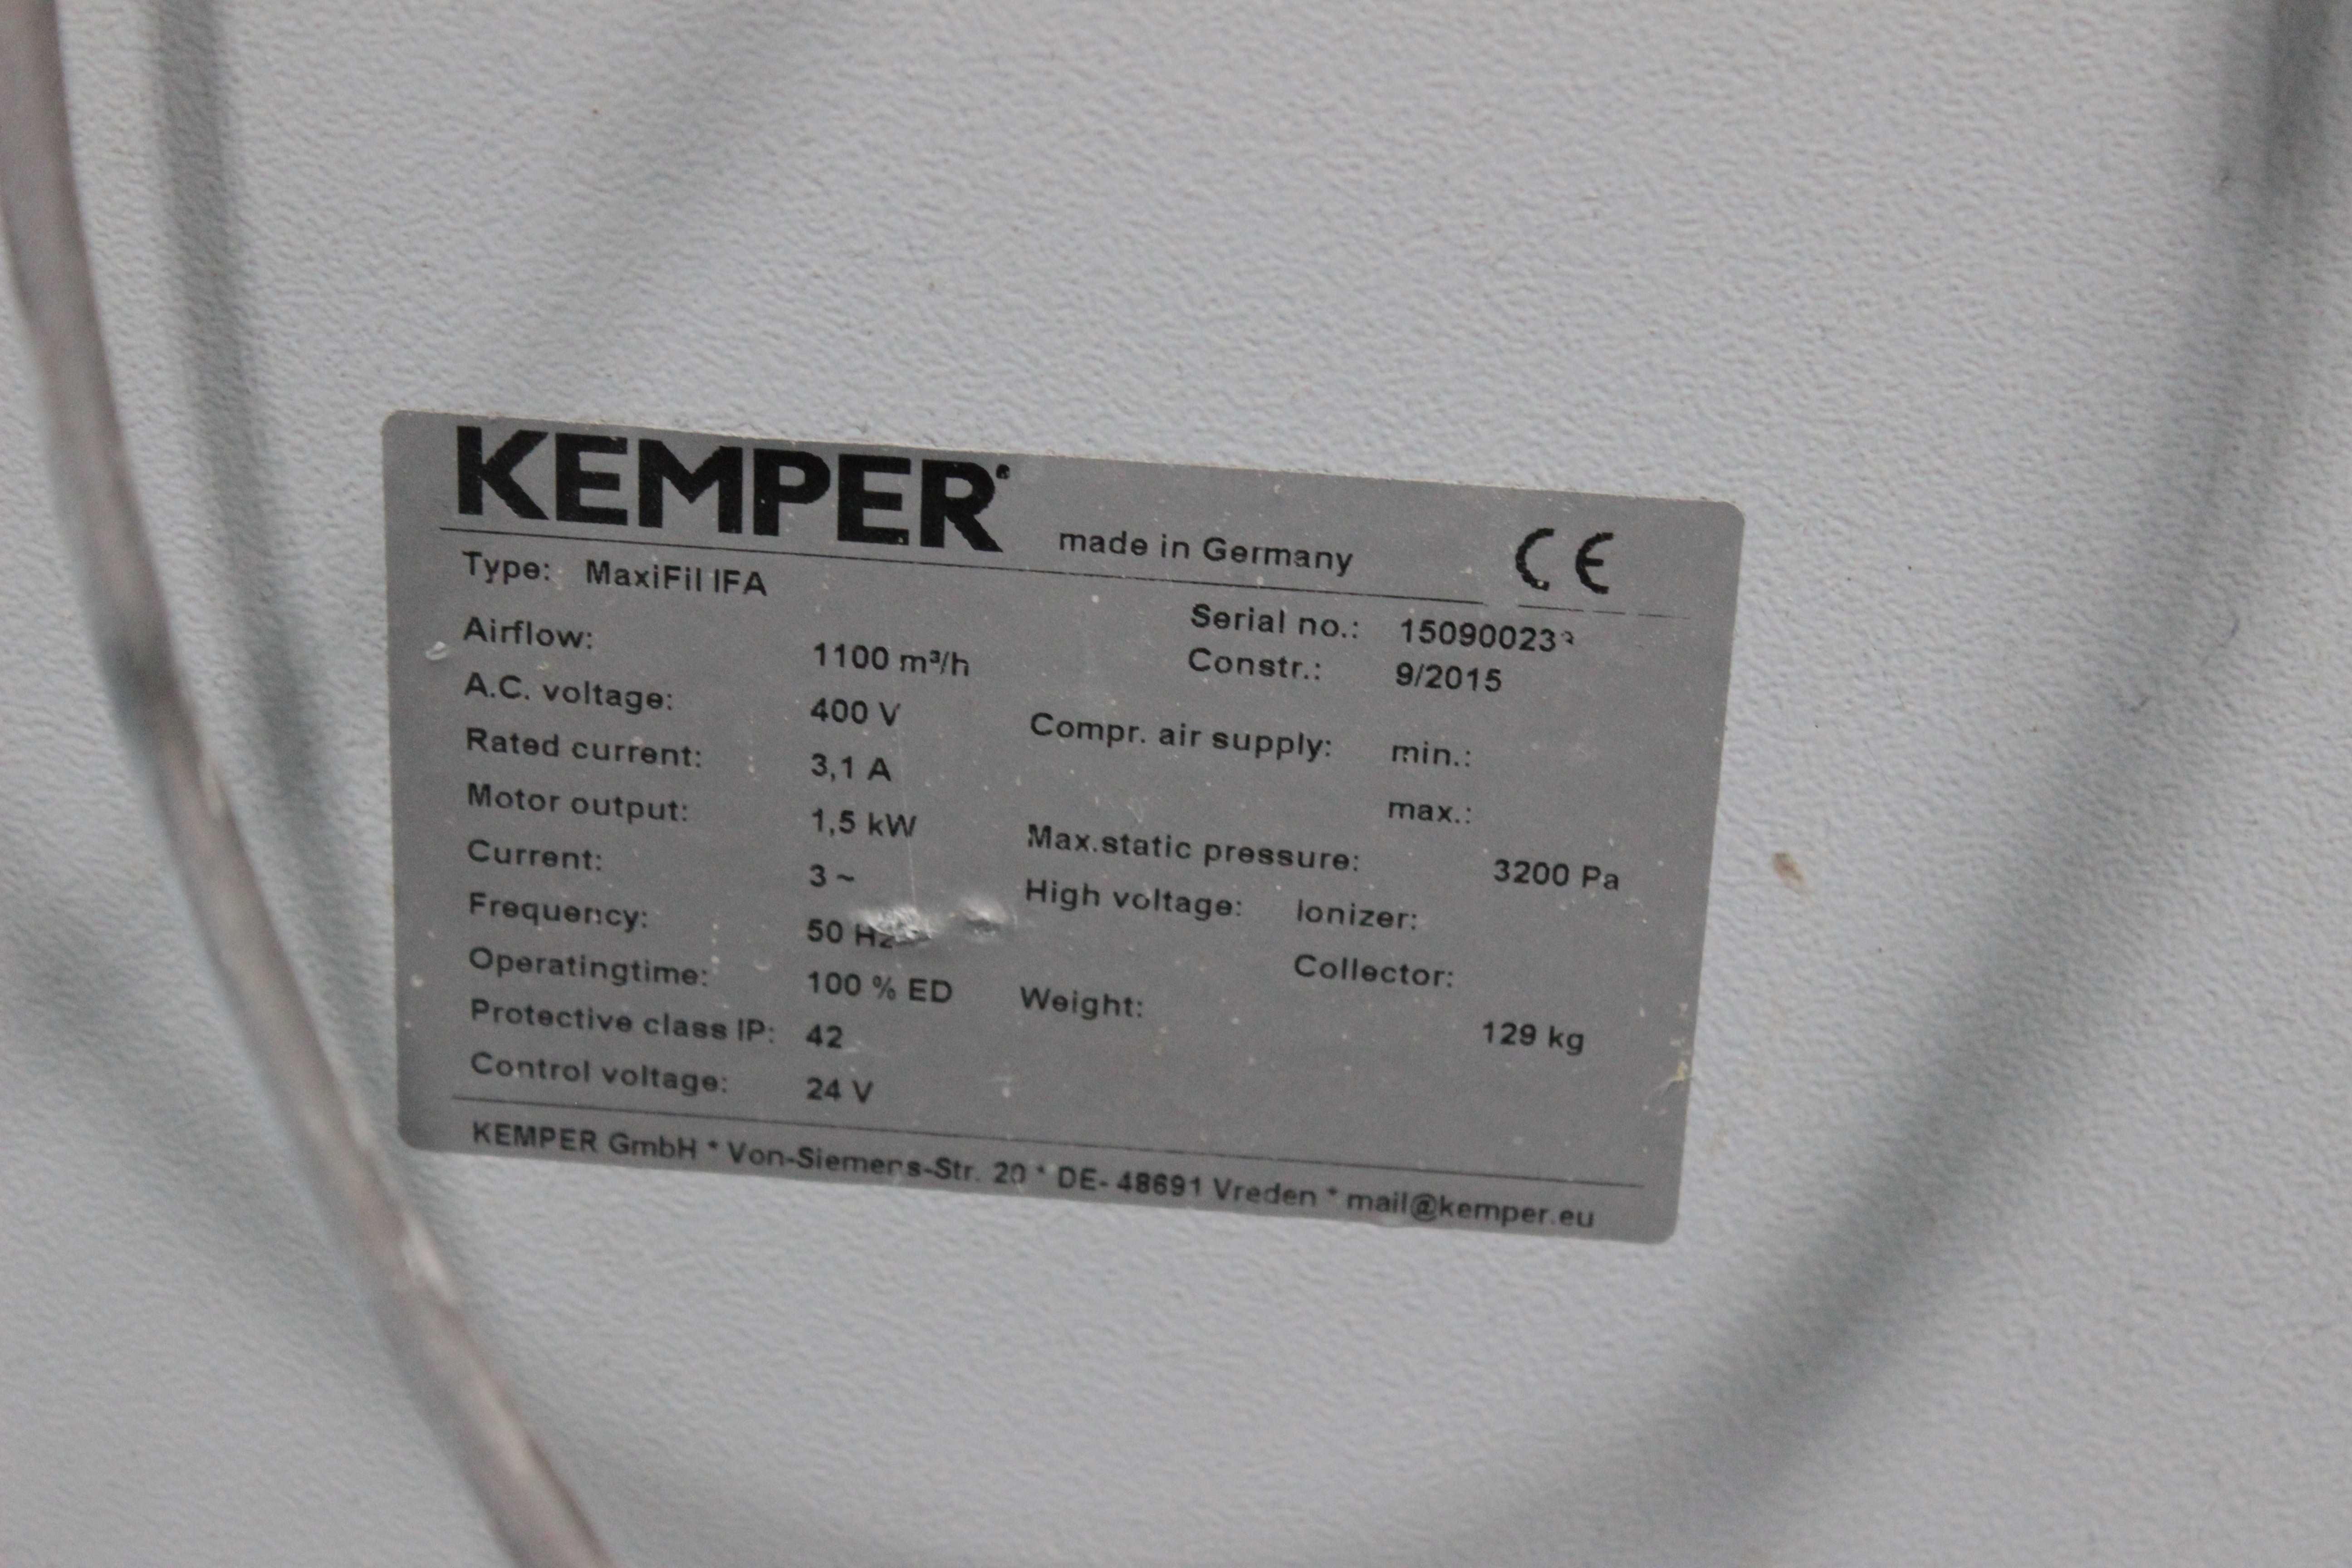 Filtr przejezdny mechaniczny z ramieniem rurowym 2m KEMPER MaxiFil